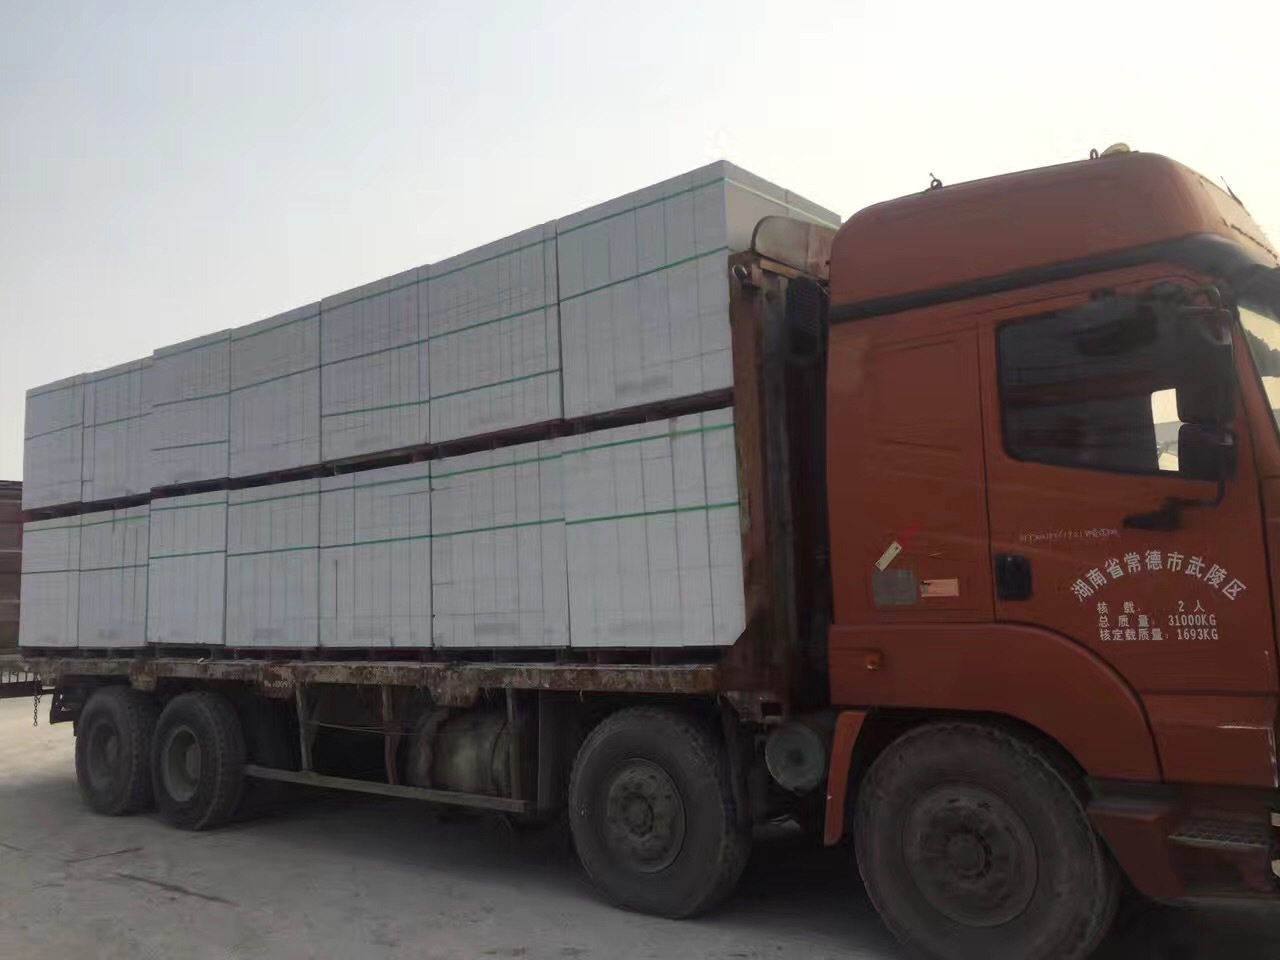 2019杭州宁波嘉兴加气砼砌块墙体及装饰工程质量控制